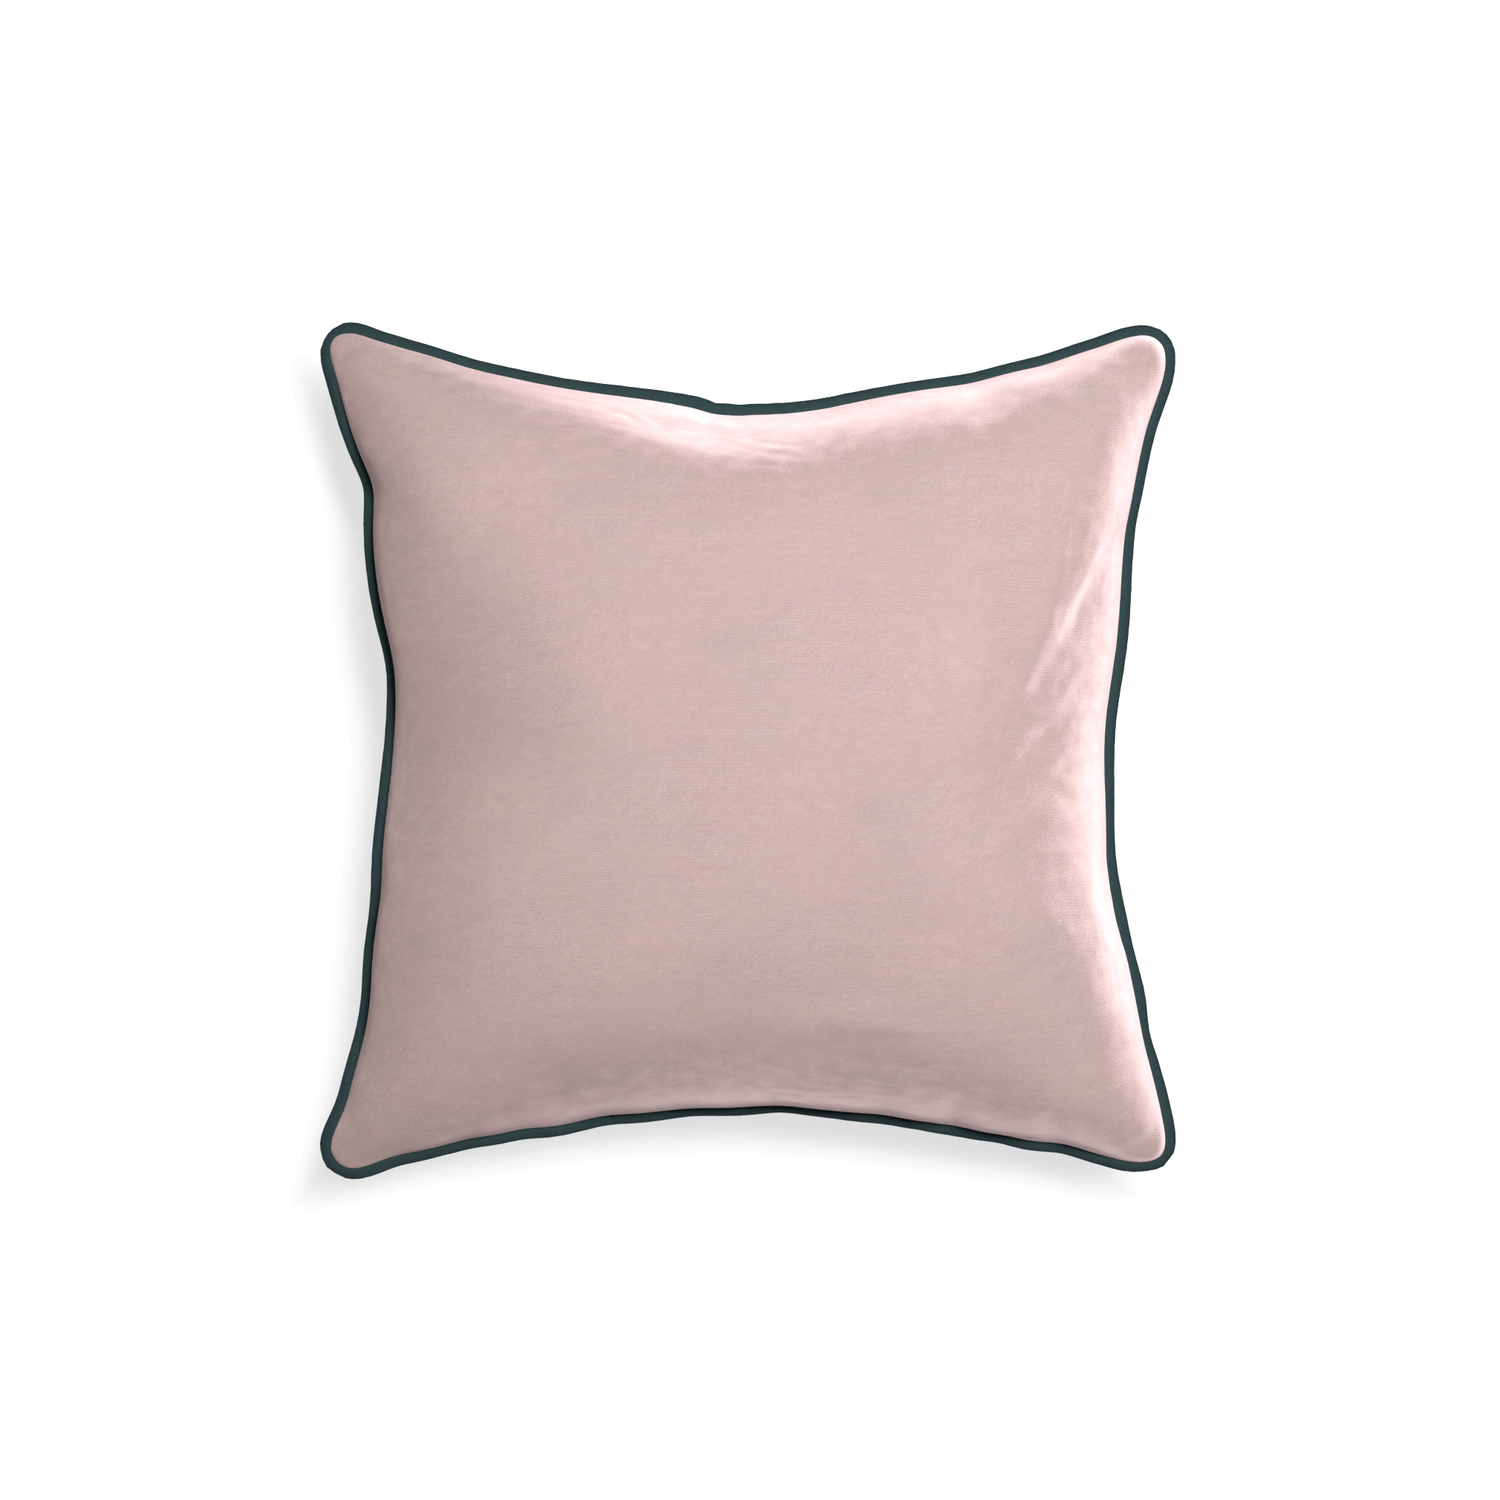 18-square rose velvet custom light pinkpillow with p piping on white background